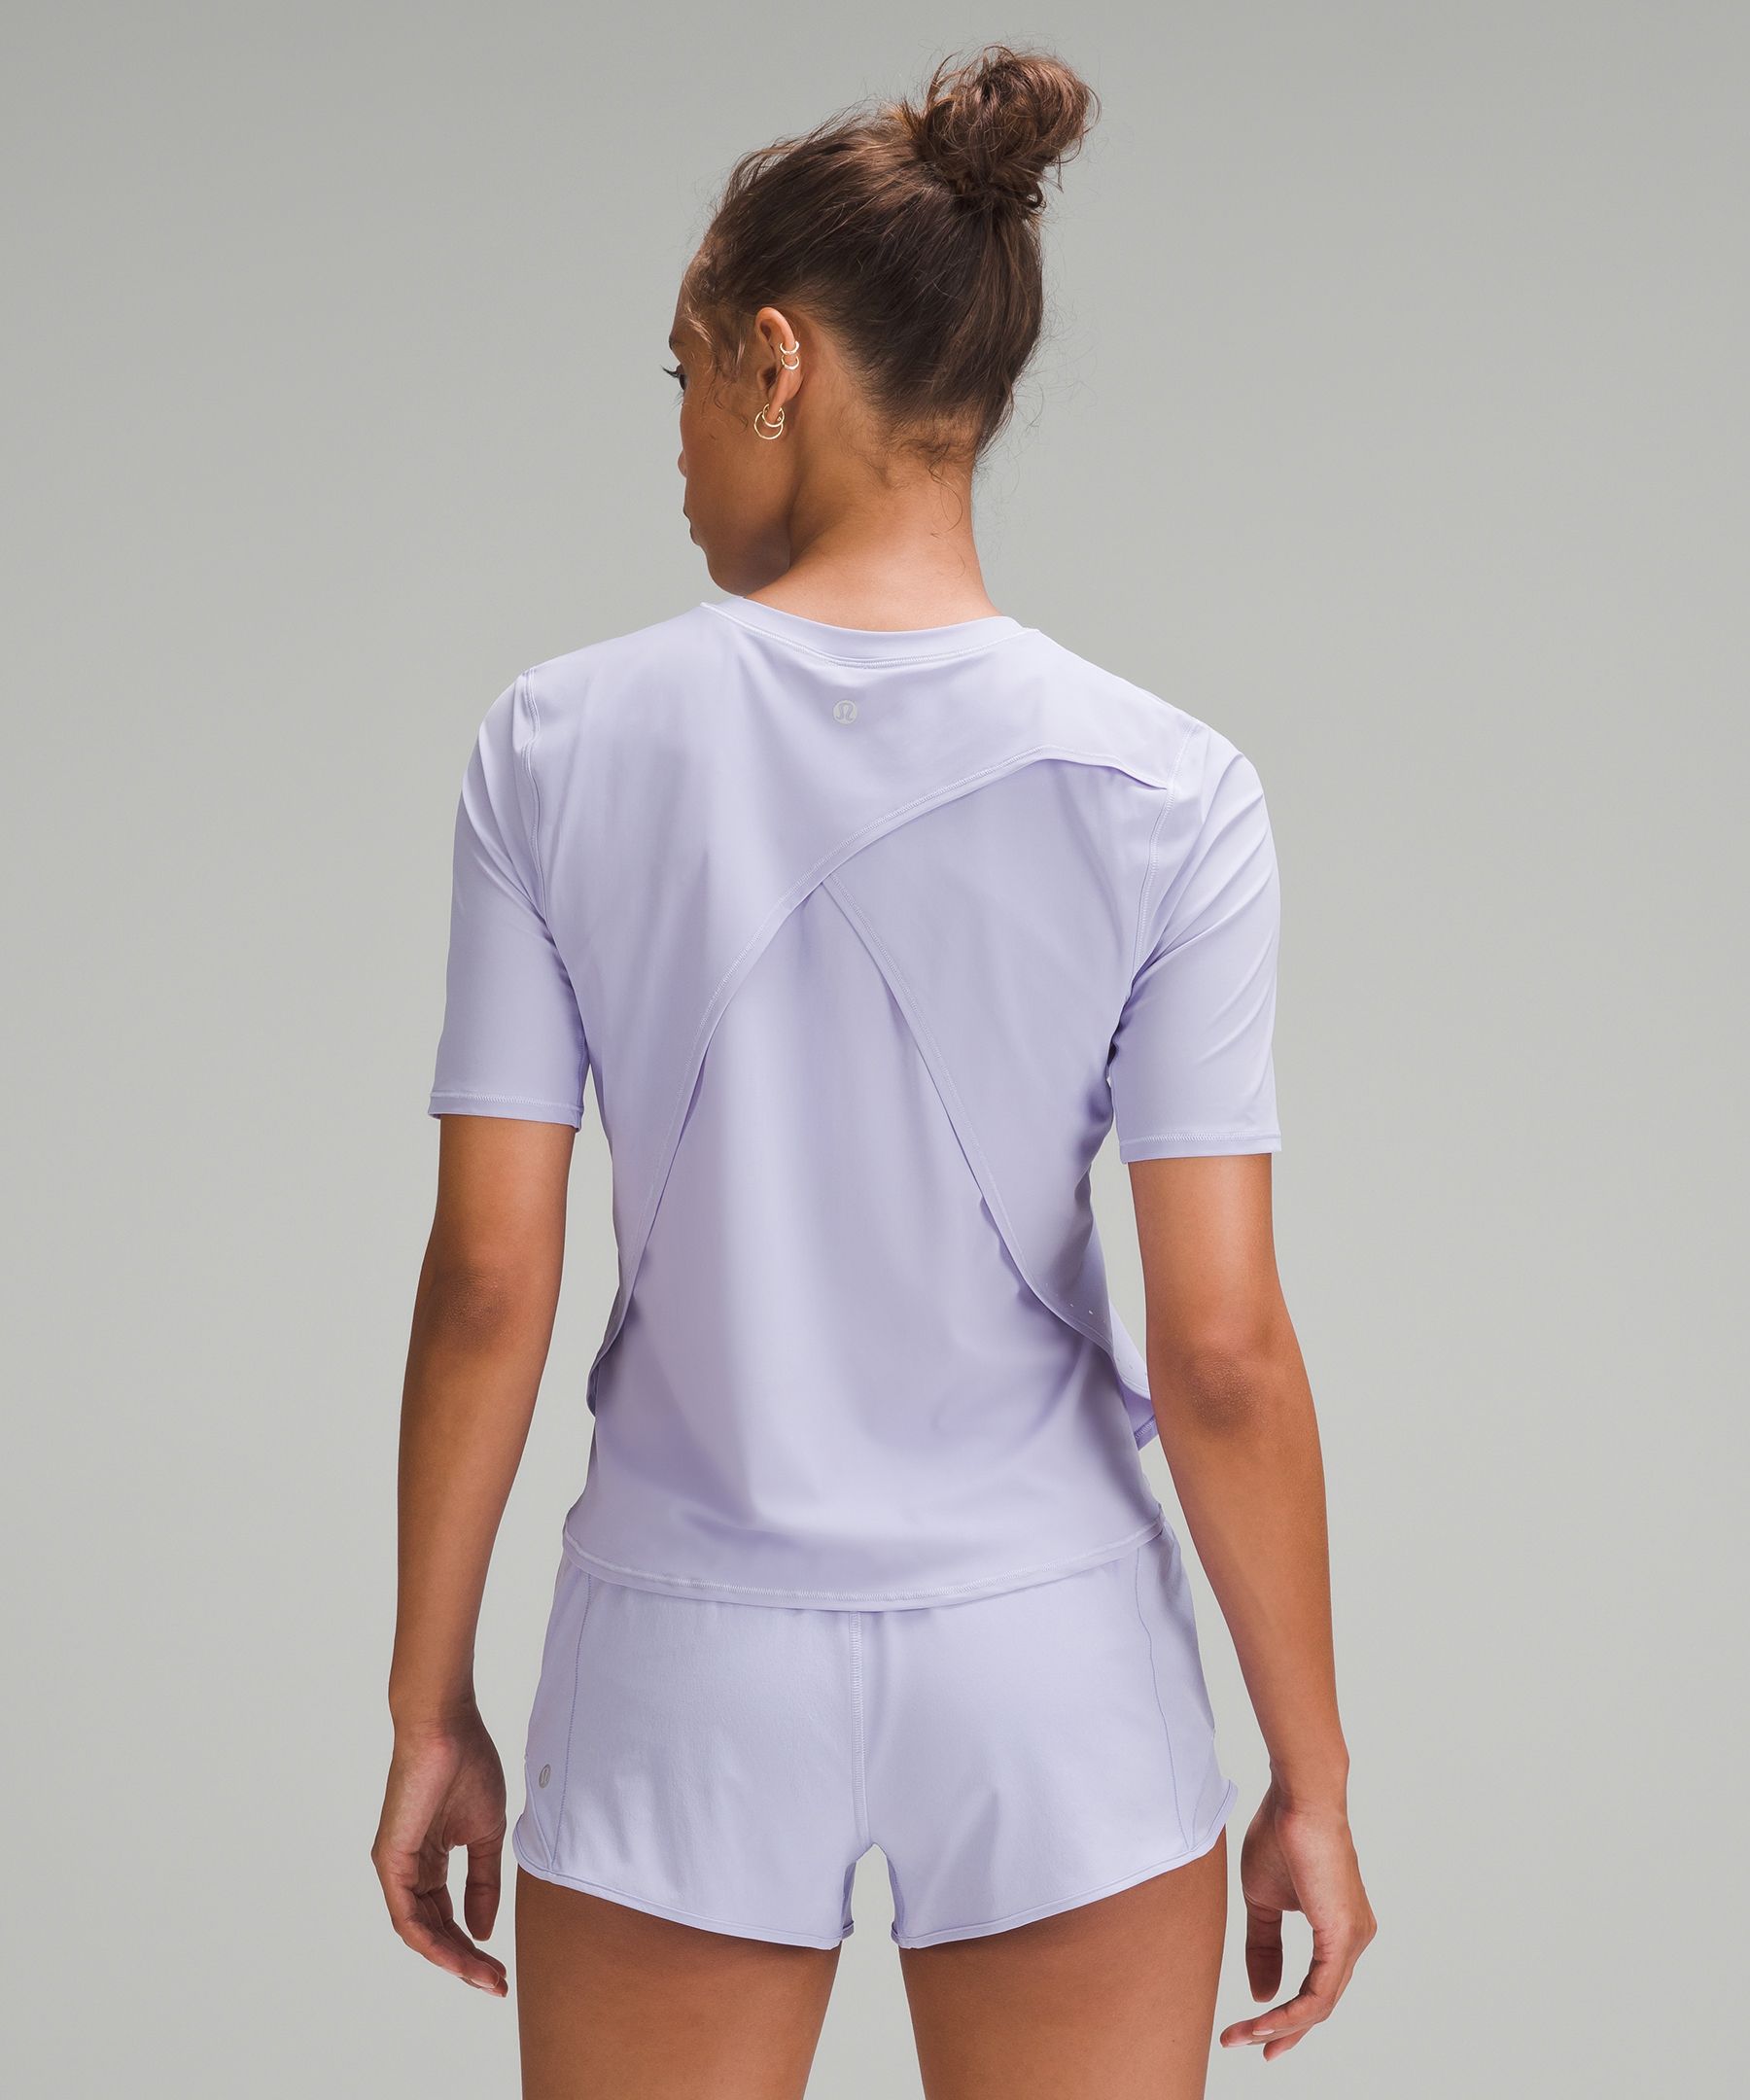 Lululemon UV Protection Fold-Over Running T-Shirt. 3